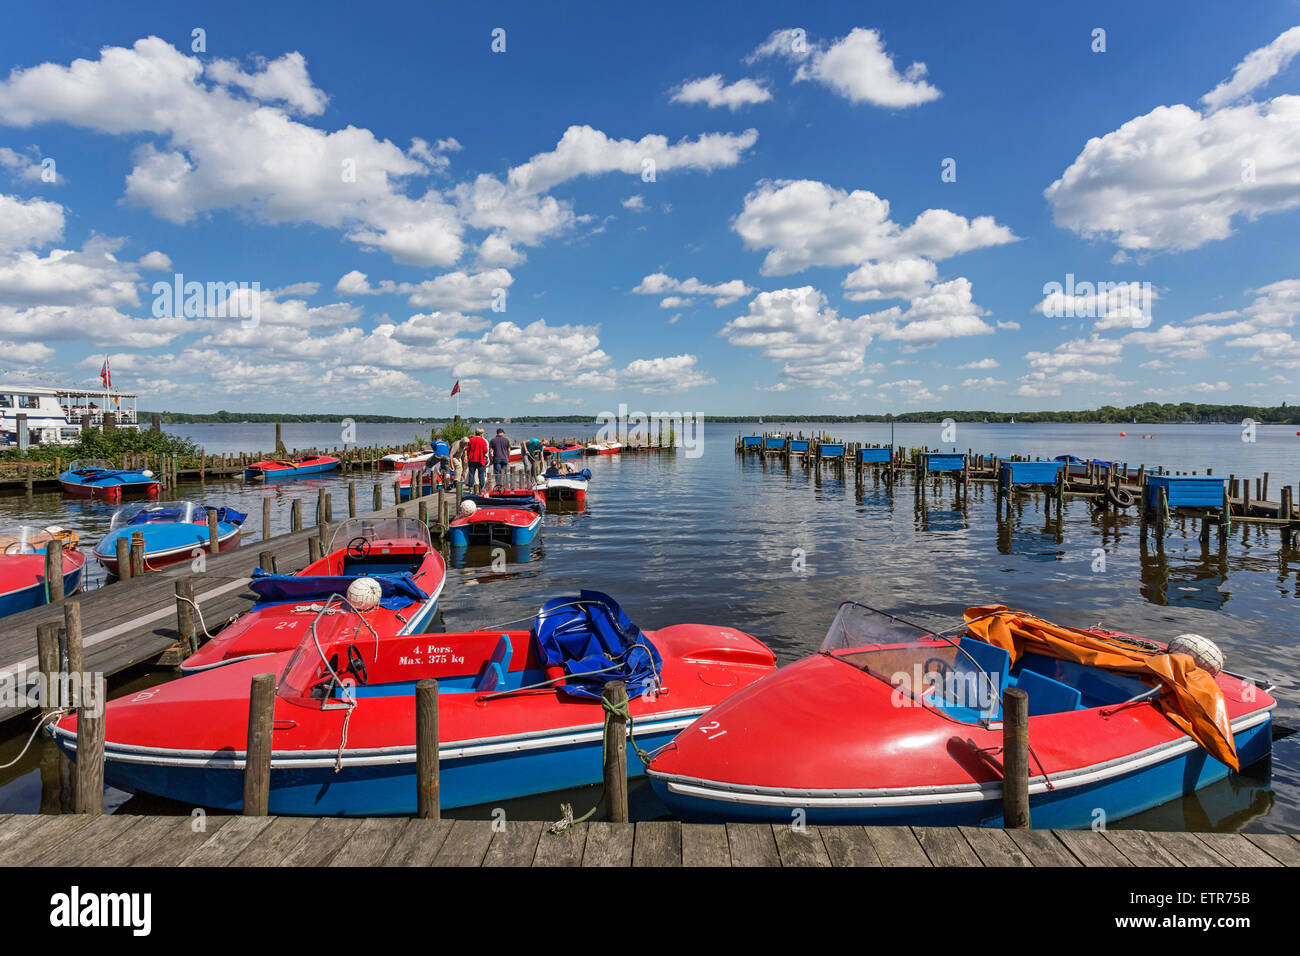 Tretboot-Verleih, Tretboot Pier am Kurpark, Bad Zwischenahn, Ammerland,  Niedersachsen, Deutschland Stockfotografie - Alamy